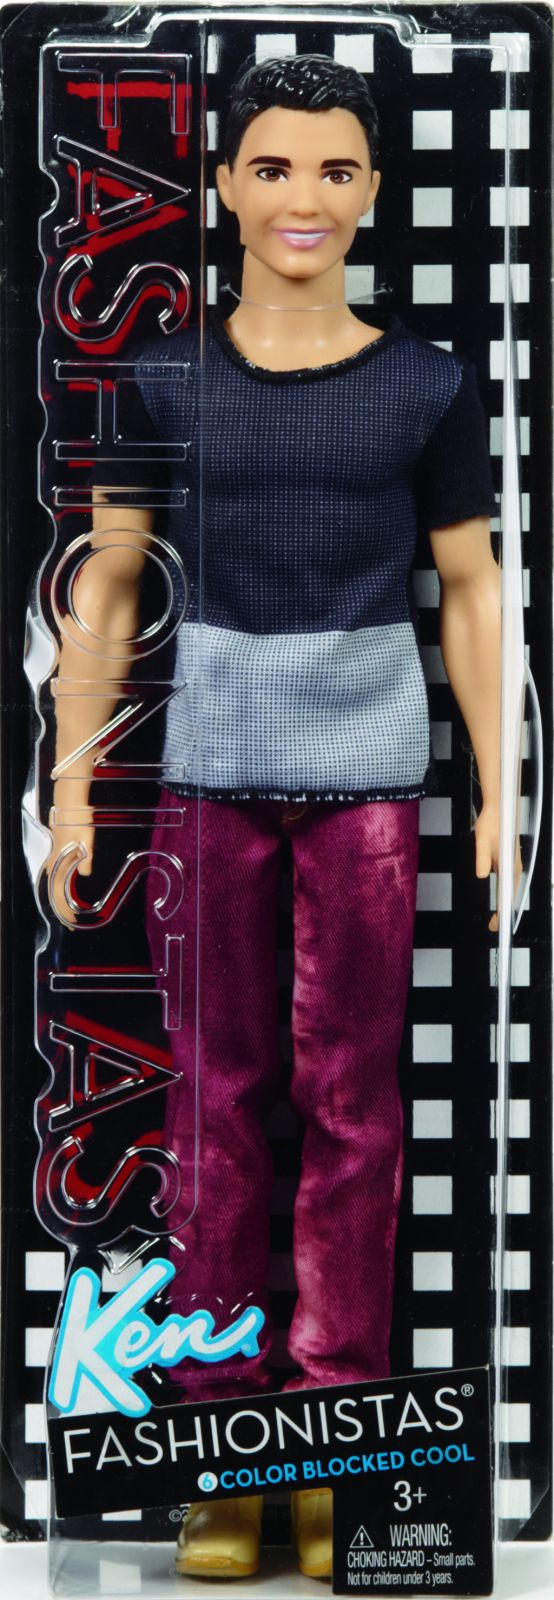 Mattel Barbie model Ken